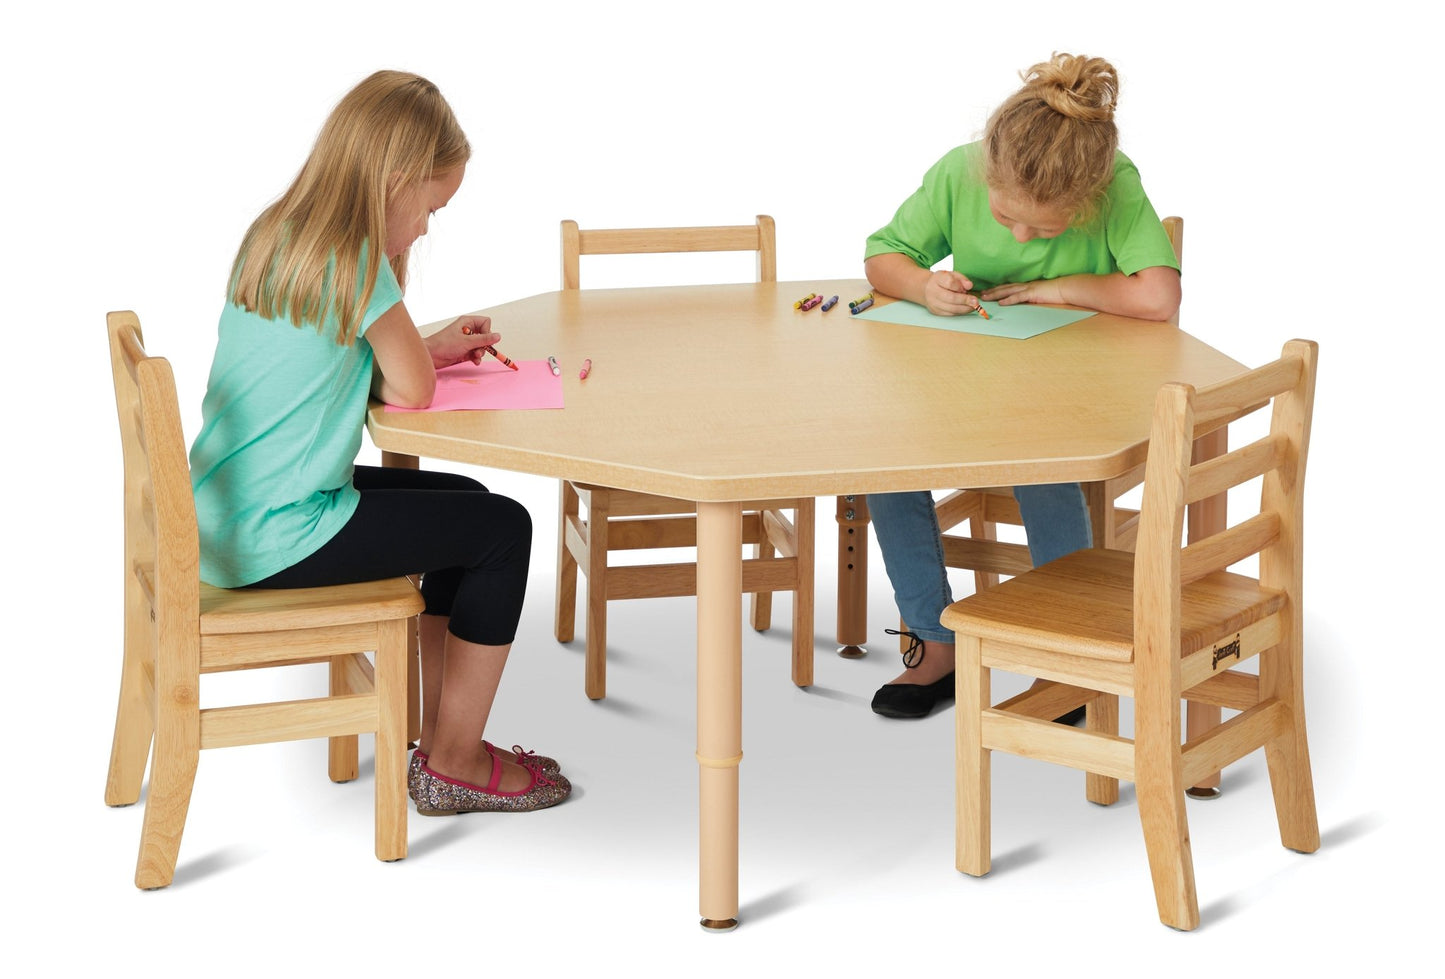 Jonti-Craft Purpose+ Octagon Table (Jonti-Craft JON-6246JCP251) - SchoolOutlet